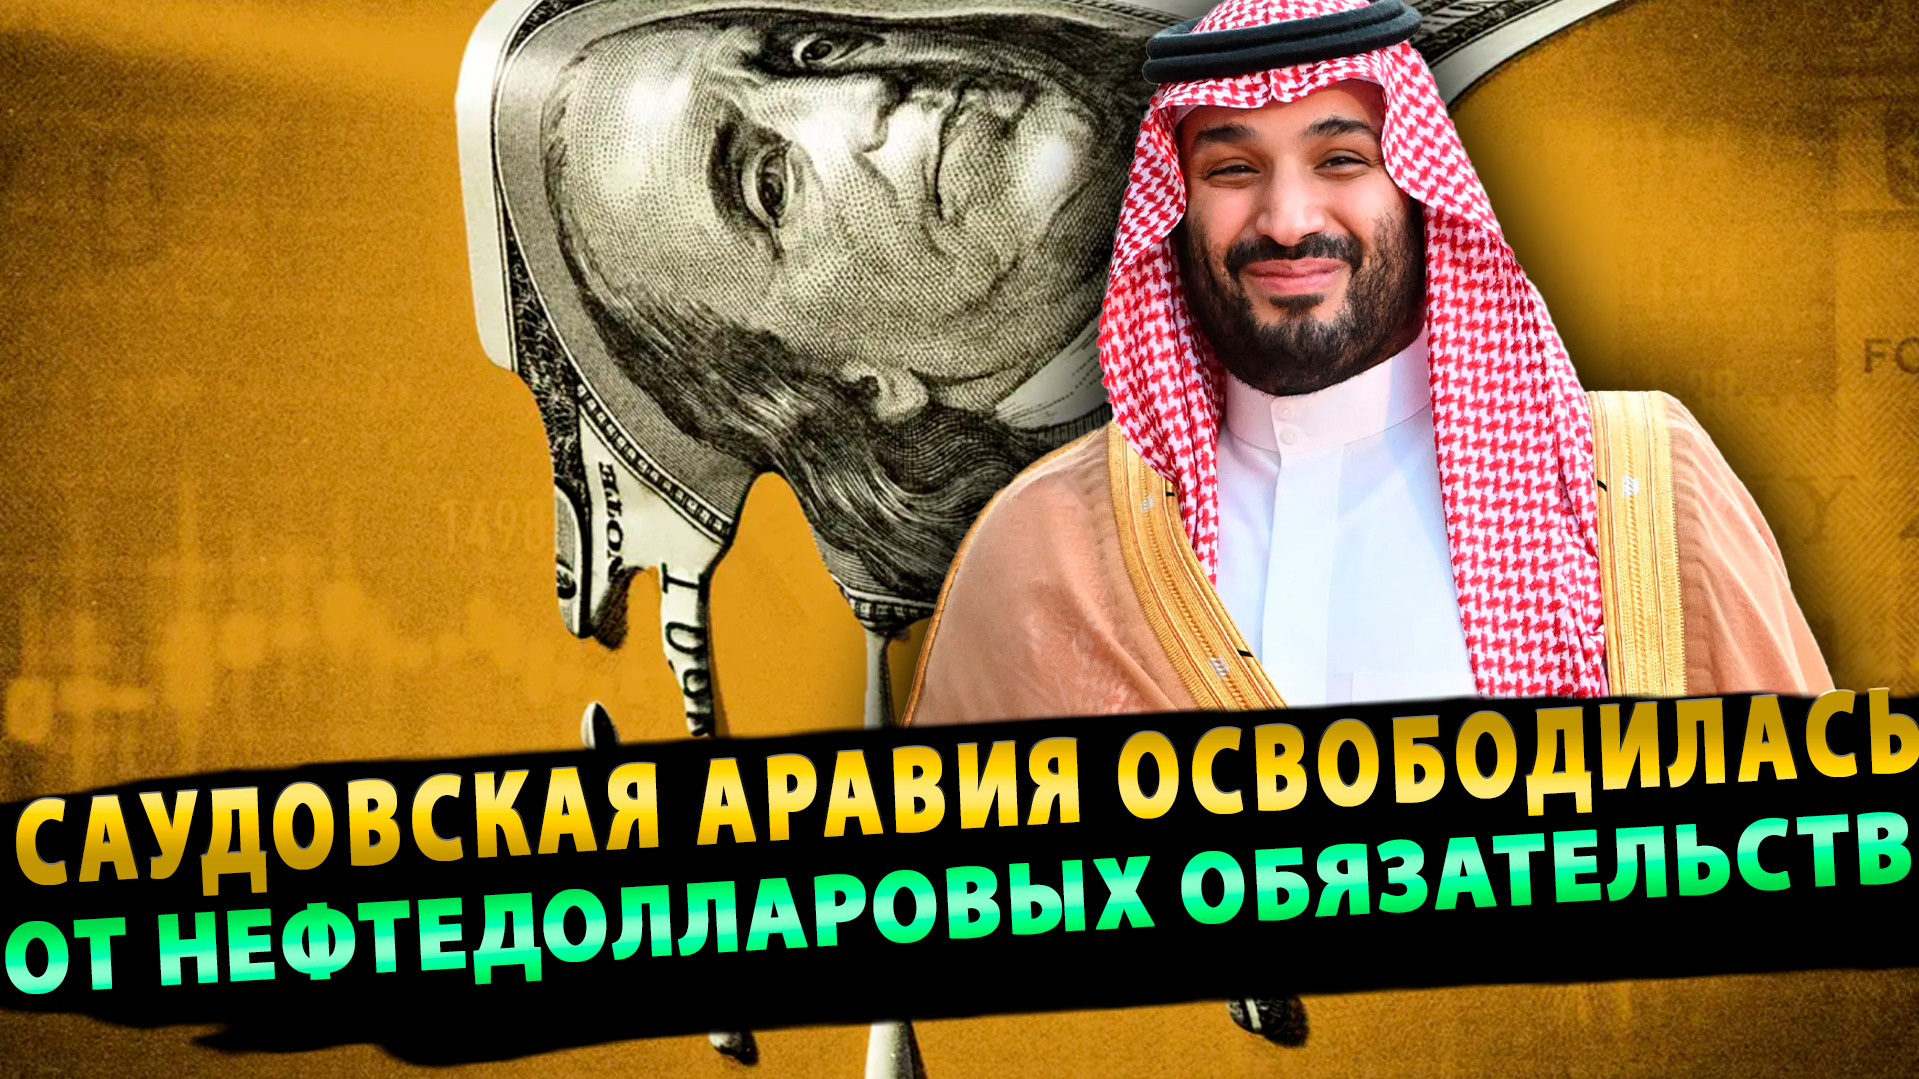 Саудовская Аравия освободилась от нефтедолларовых обязательств